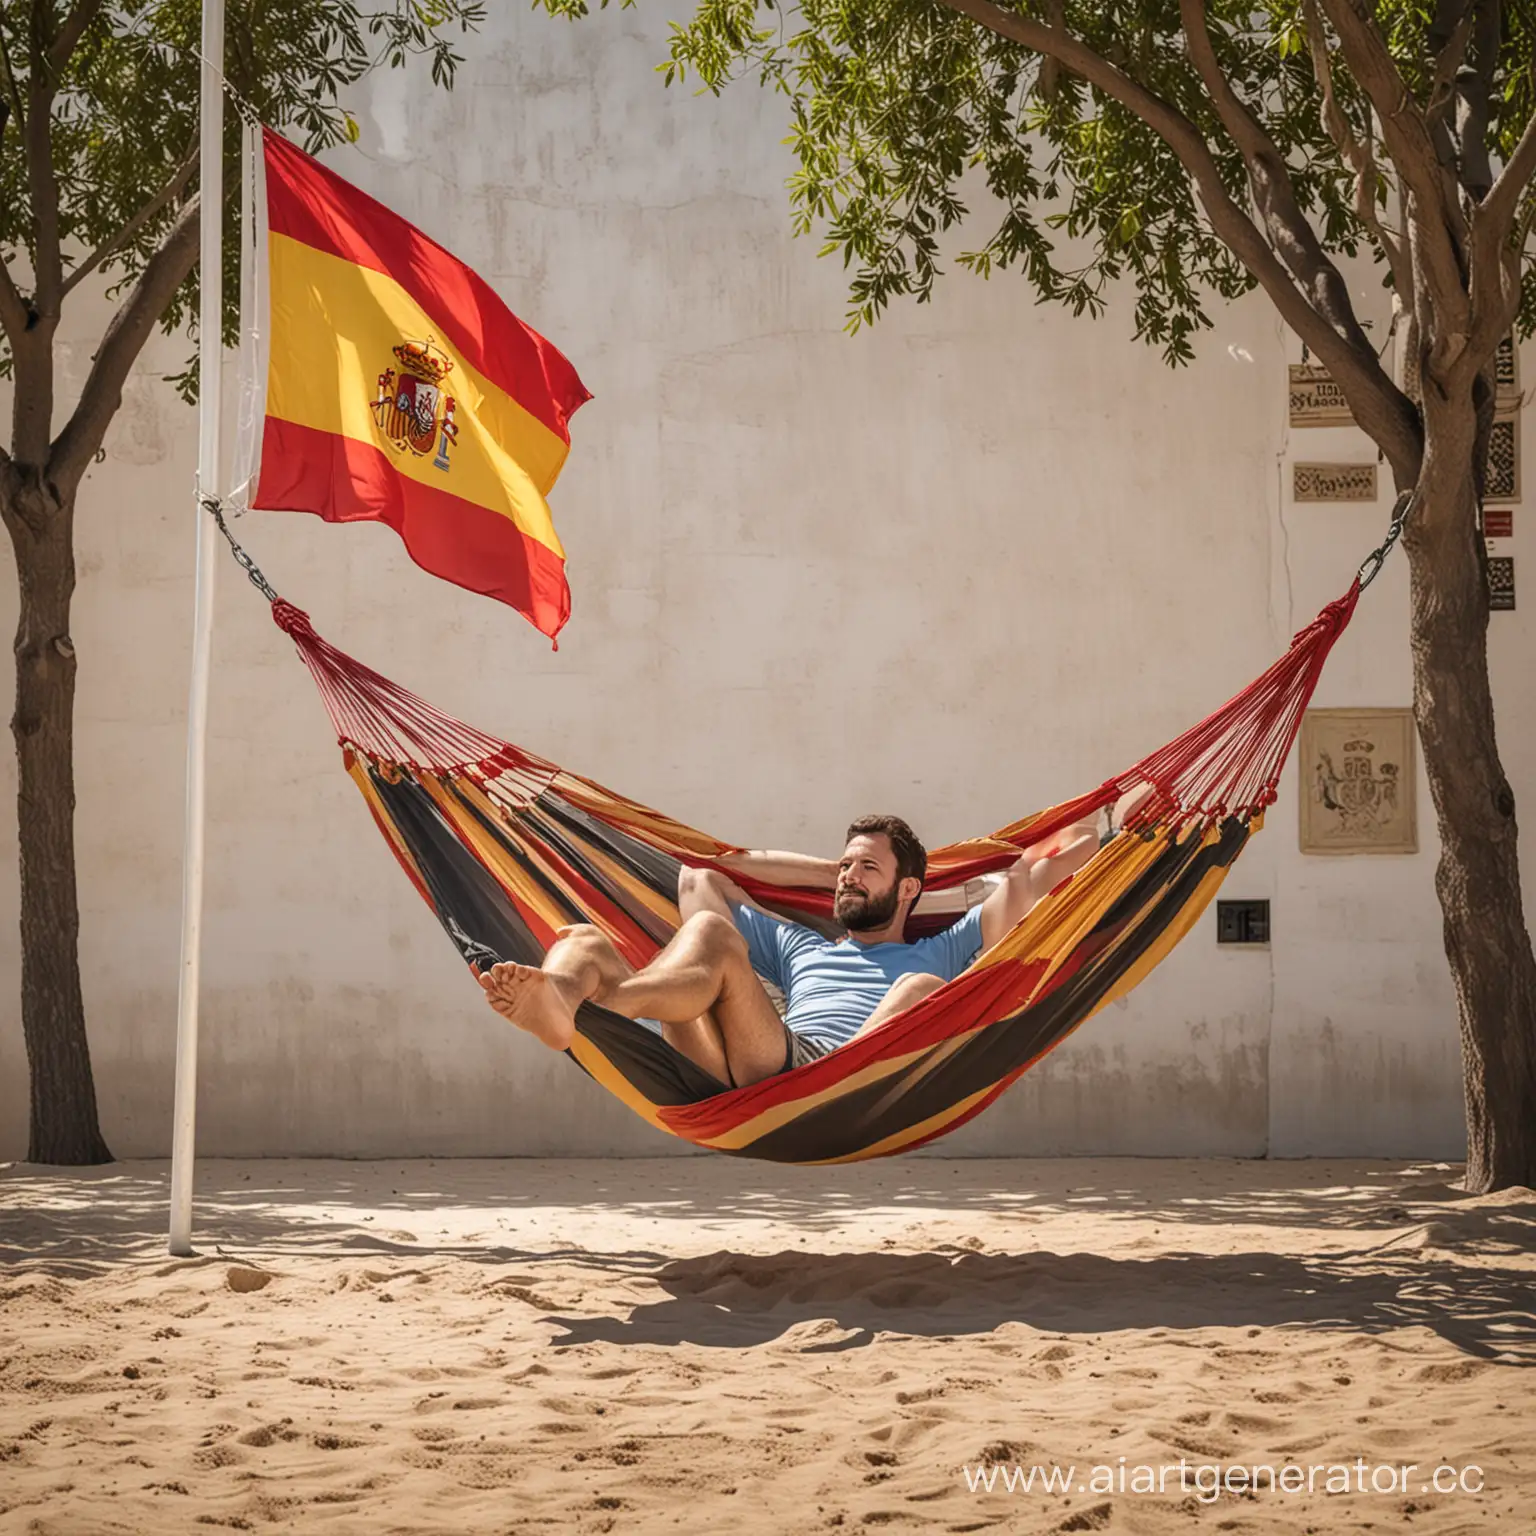 мужчина отдыхает в гамаке на фоне испанского флага